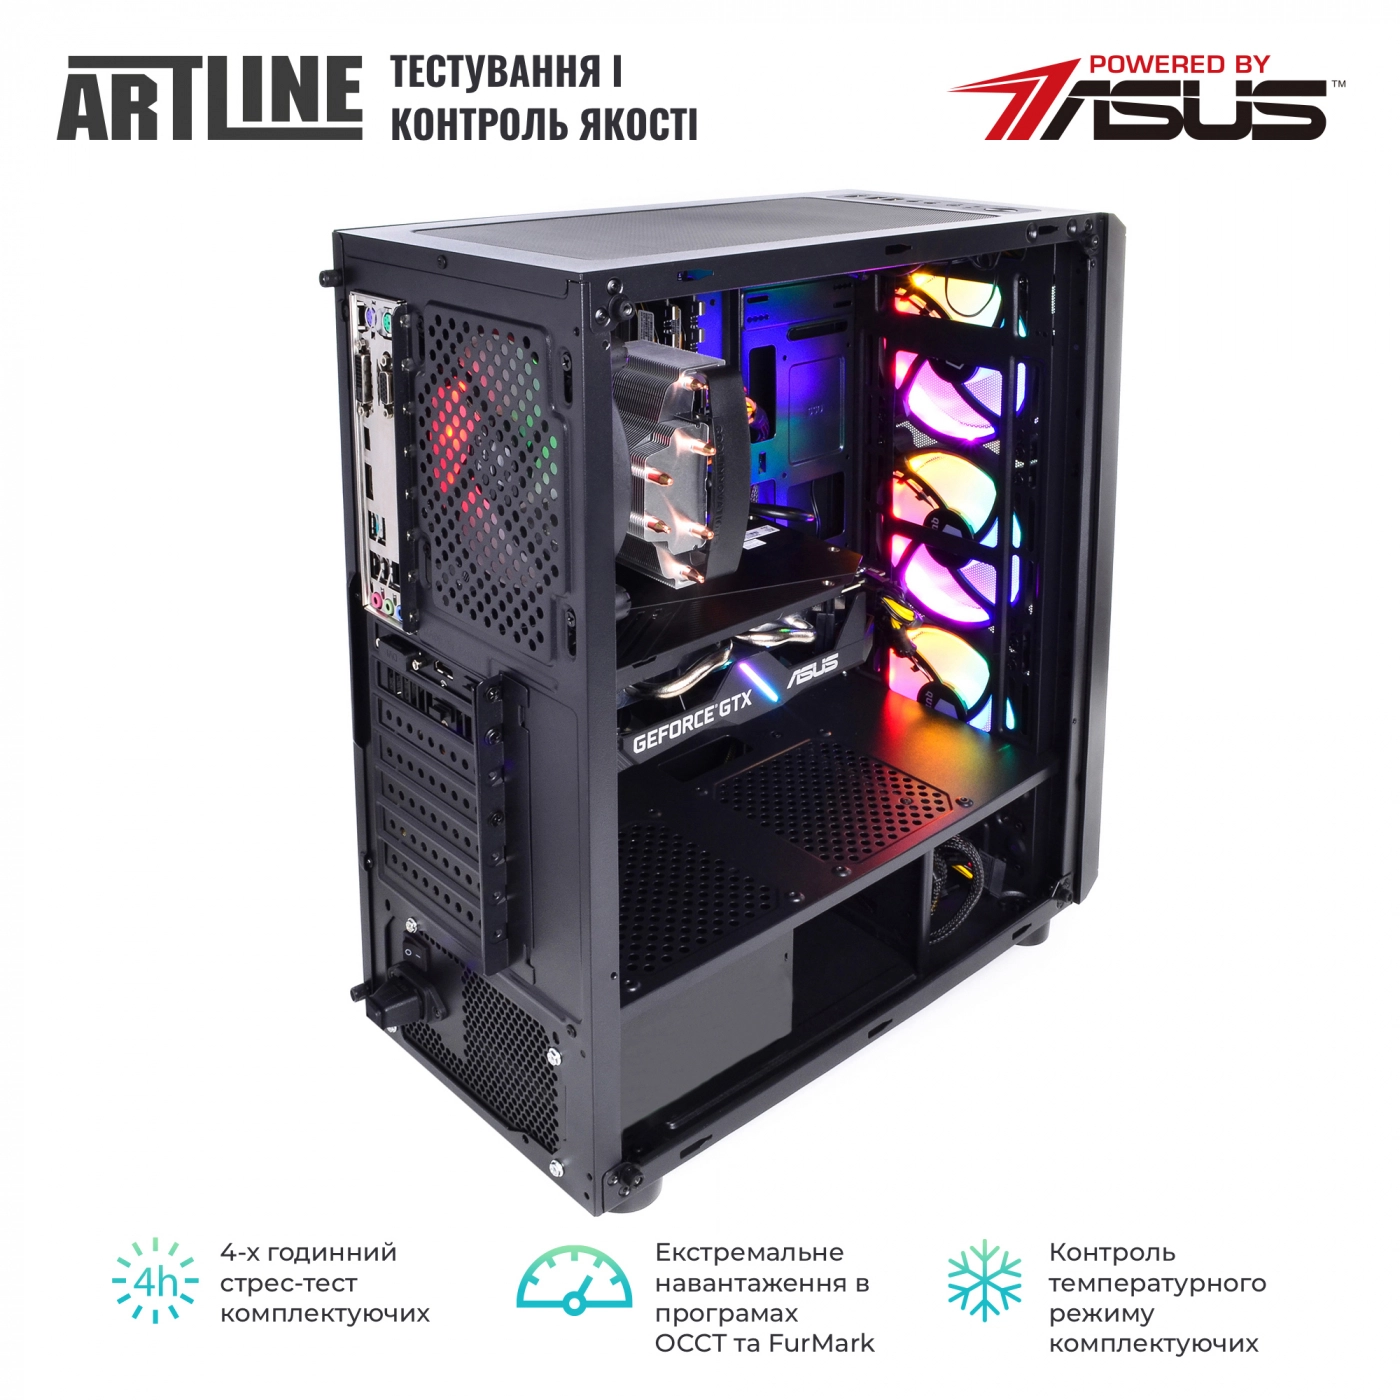 Купить Компьютер ARTLINE Gaming X39v61 - фото 7